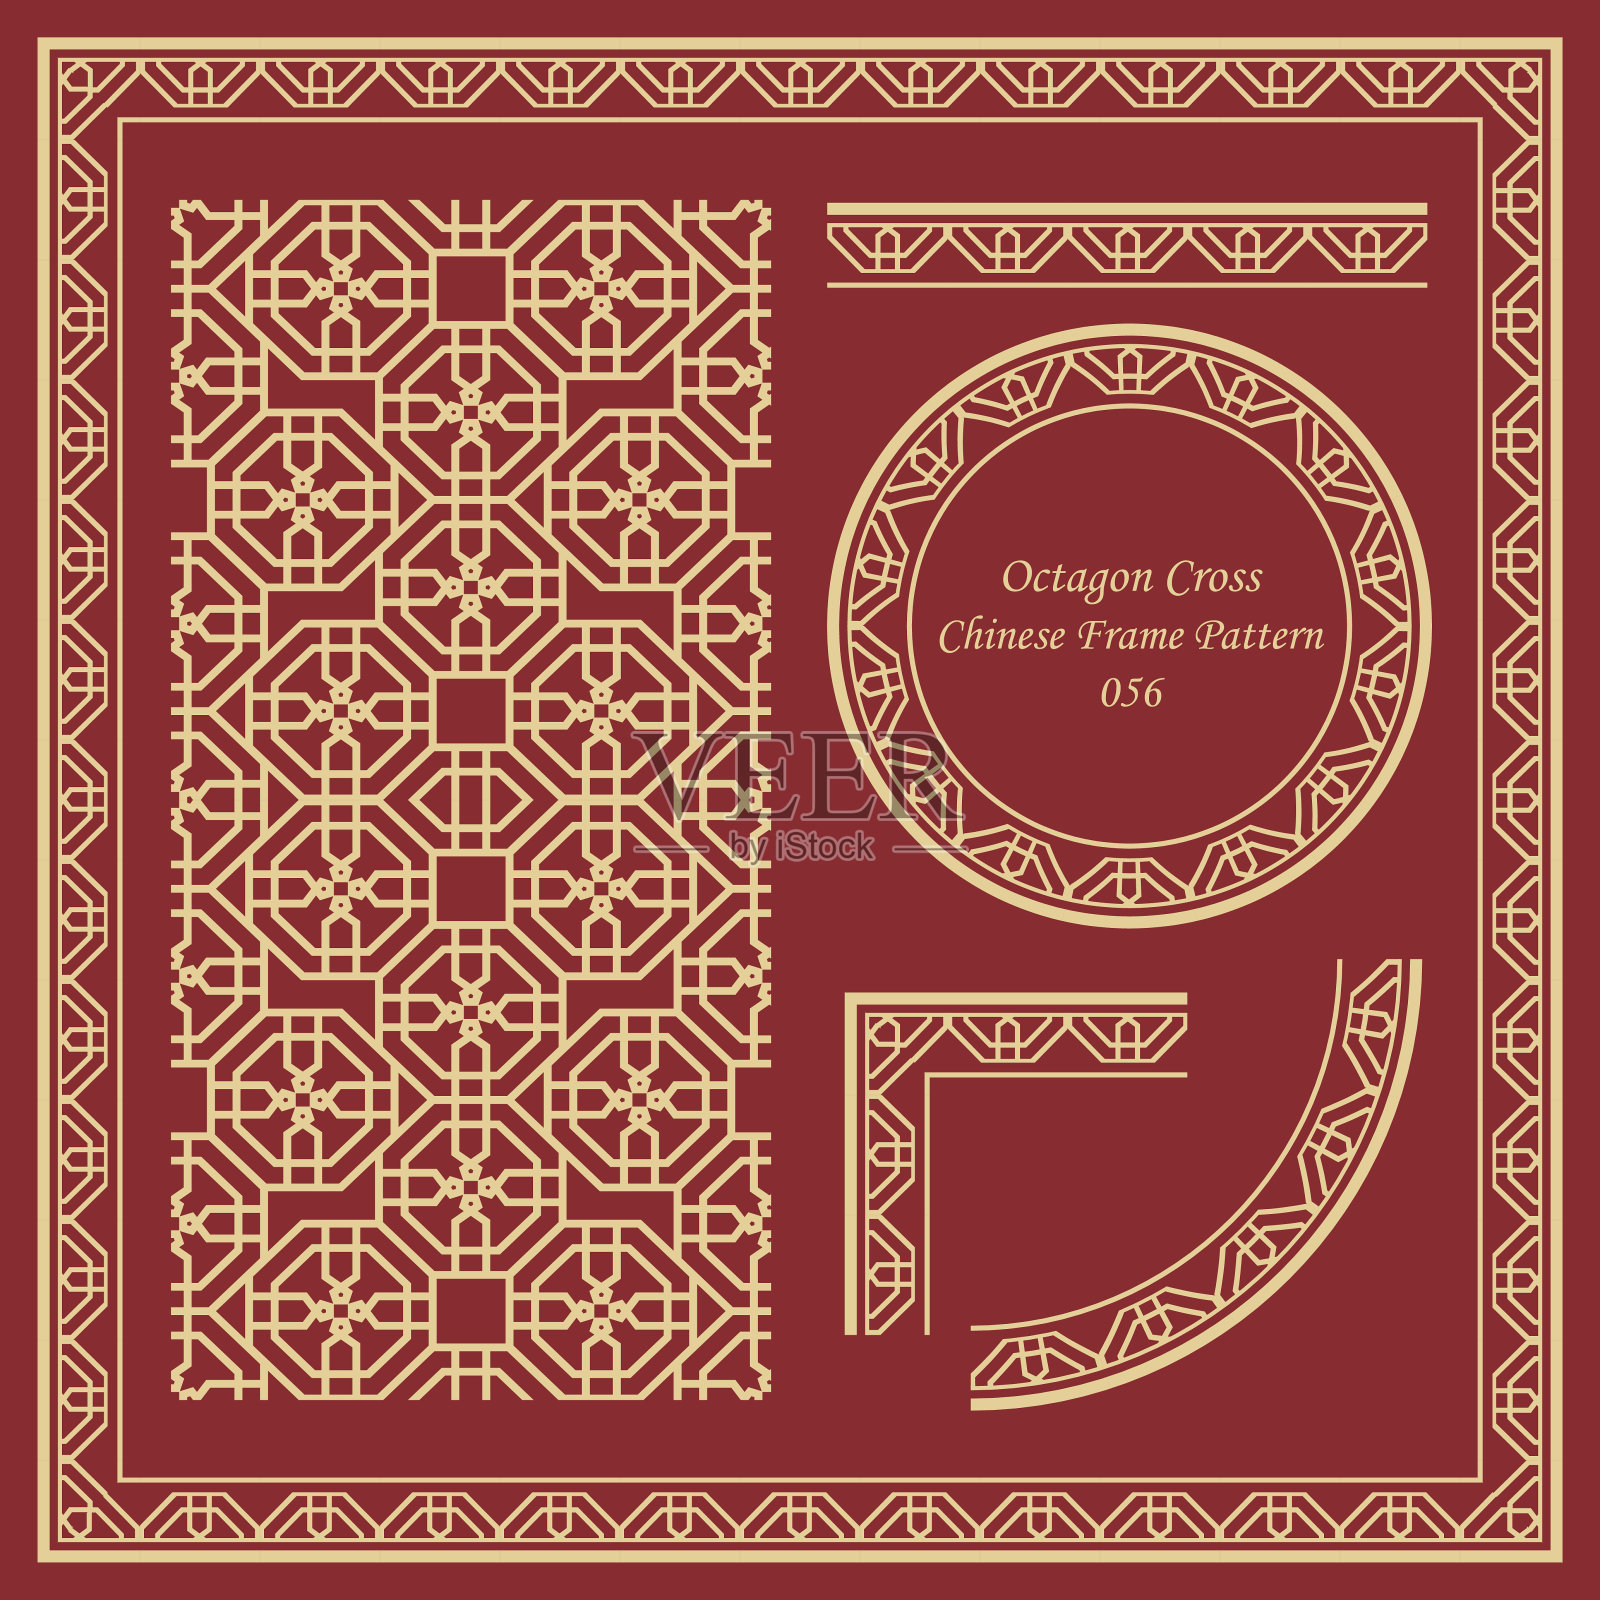 古董中国框架模式设置056八角形十字花设计模板素材